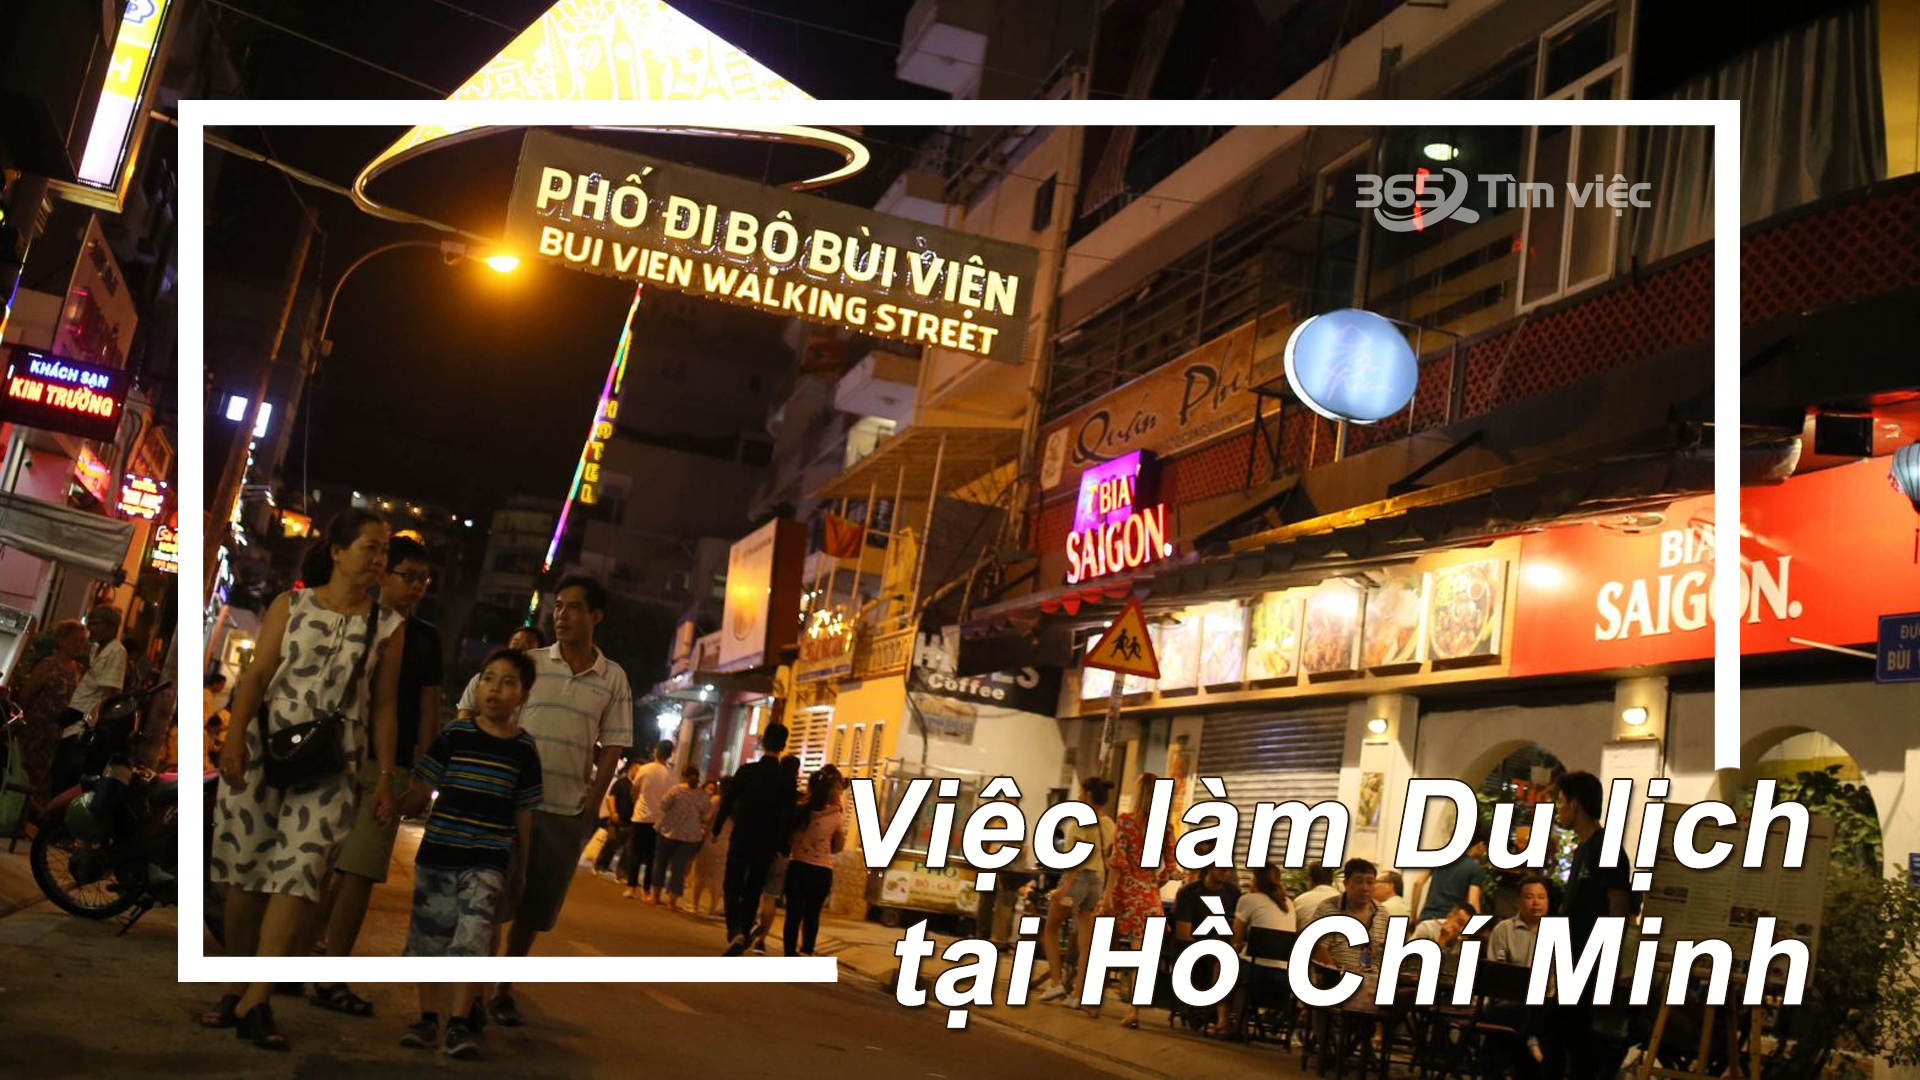 Thành phố Hồ Chí Minh - điểm tập kết của các trụ sở du lịch của miền Nam